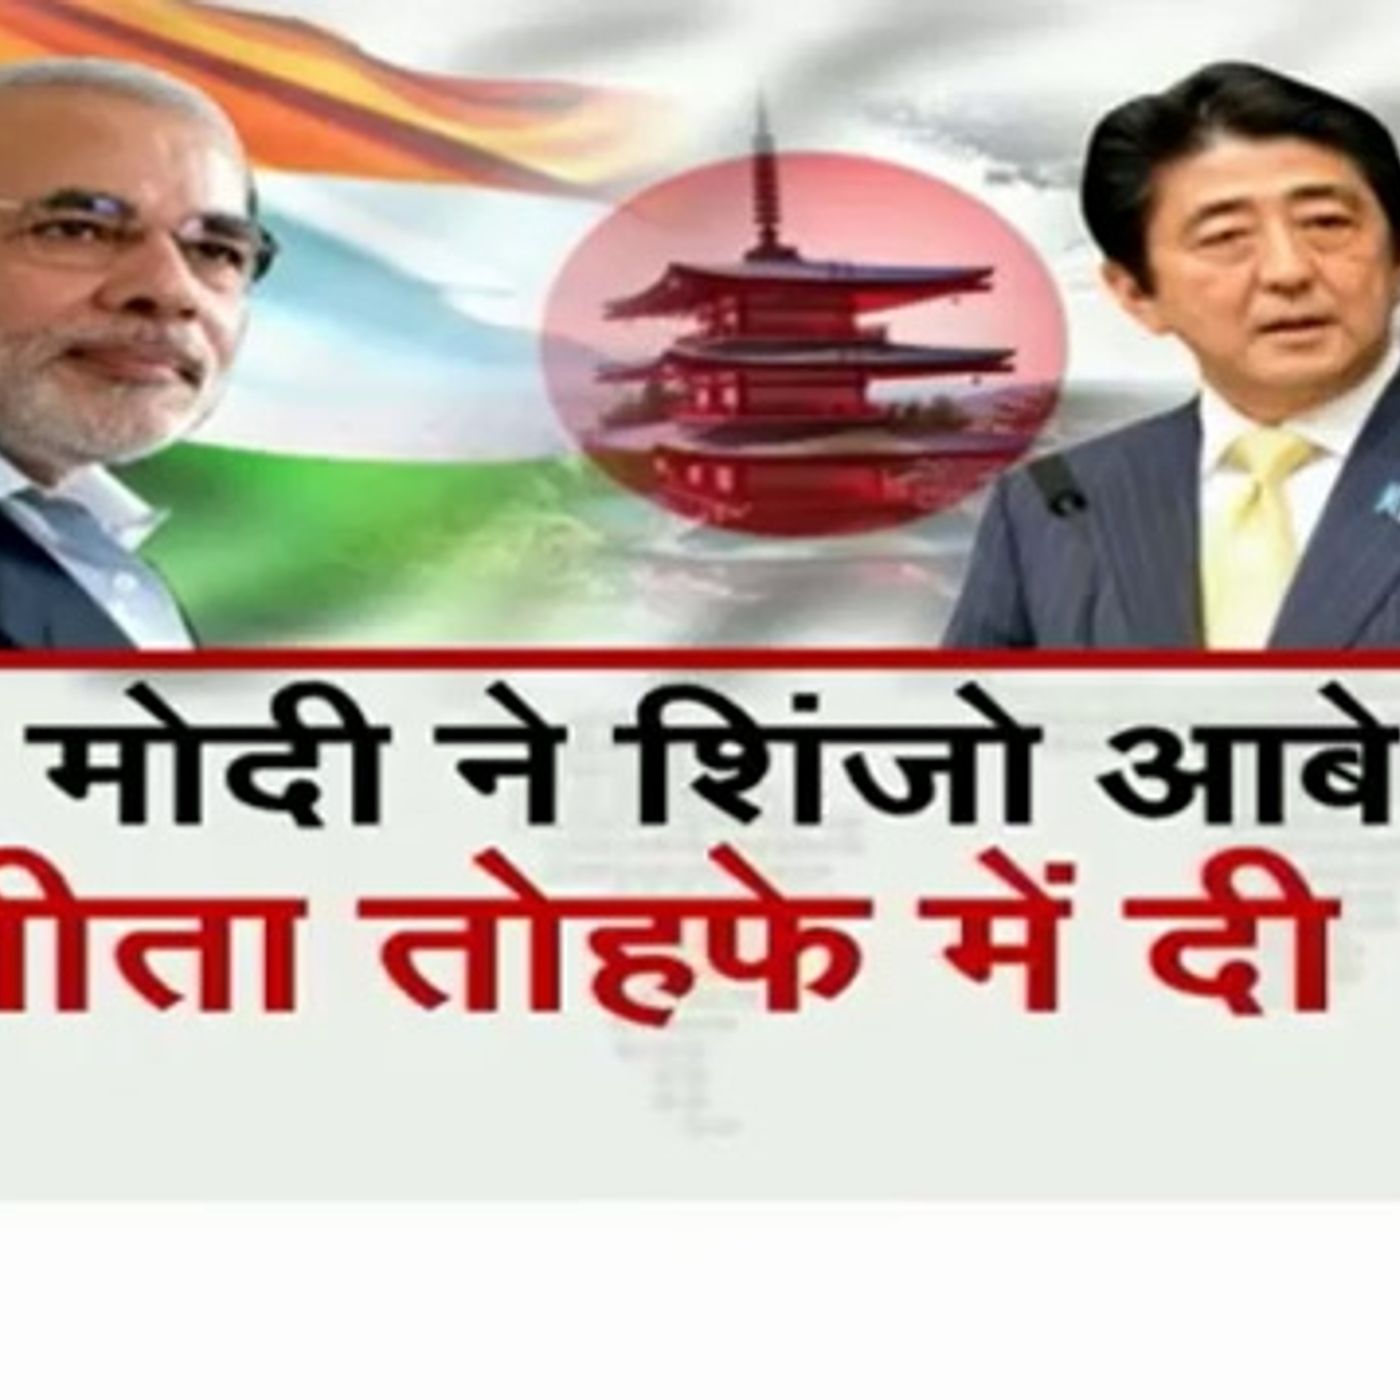 PM Modi gifts Bhagavad Gita to Shinzo Abe